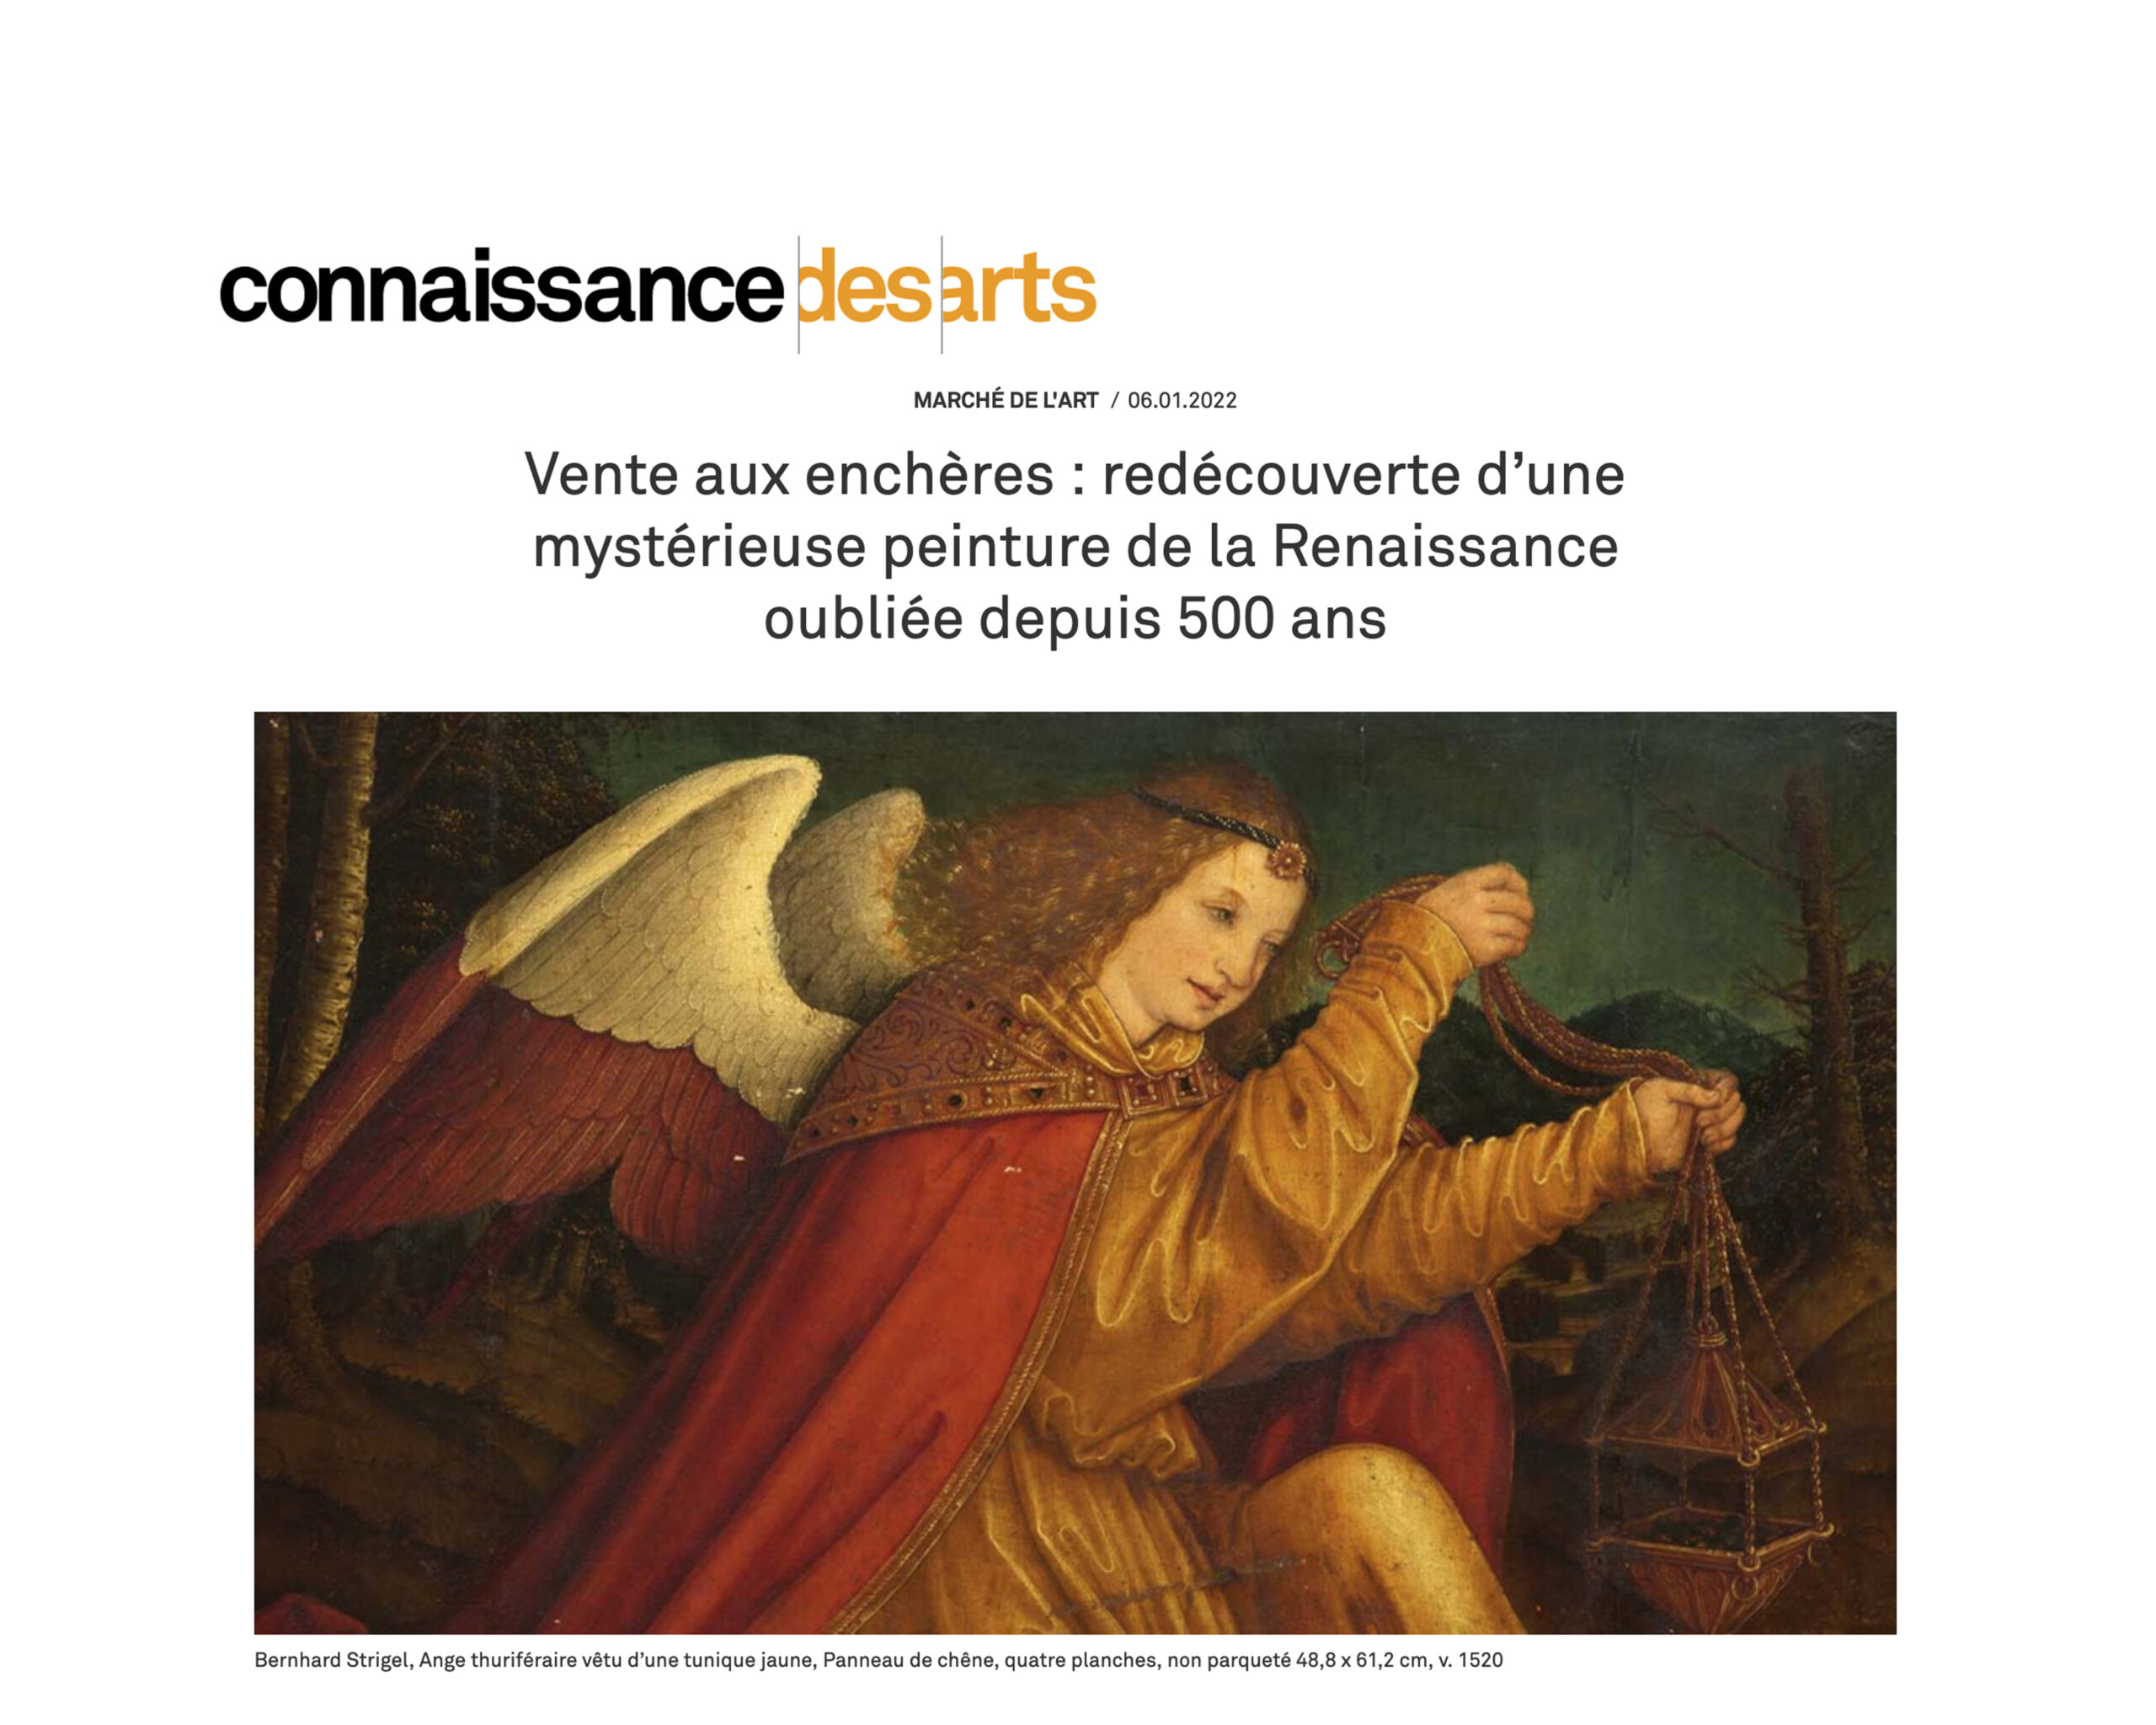 « Redécouverte d’une mystérieuse peinture de la Renaissance oubliée depuis 500 ans », 6 janvier 2022